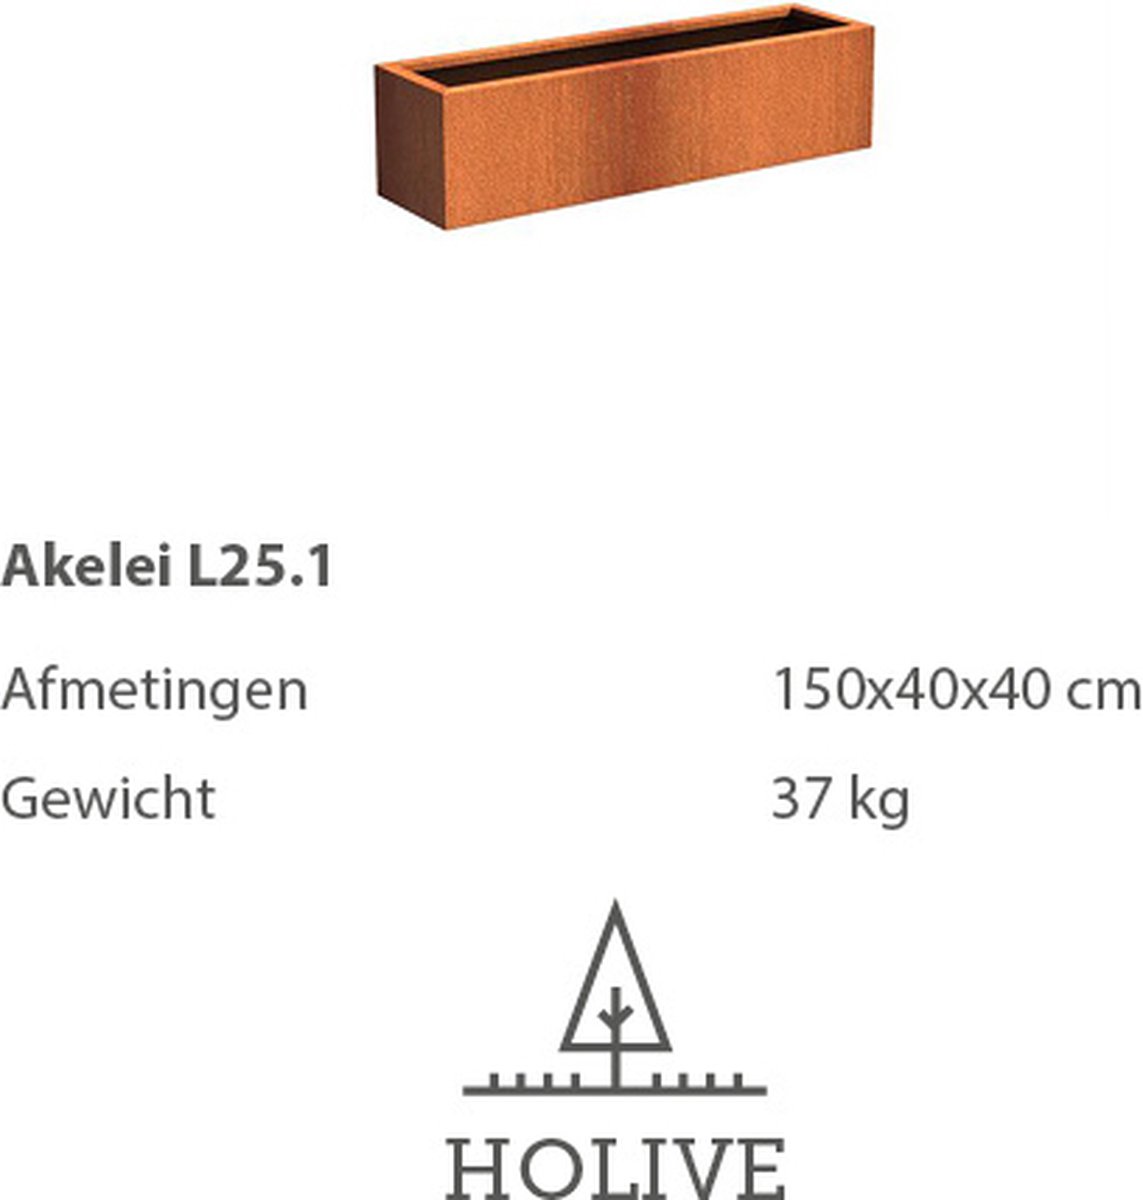 Cortenstaal Akelei L25.1 Rechthoek 150x40x40 cm. Plantenbak